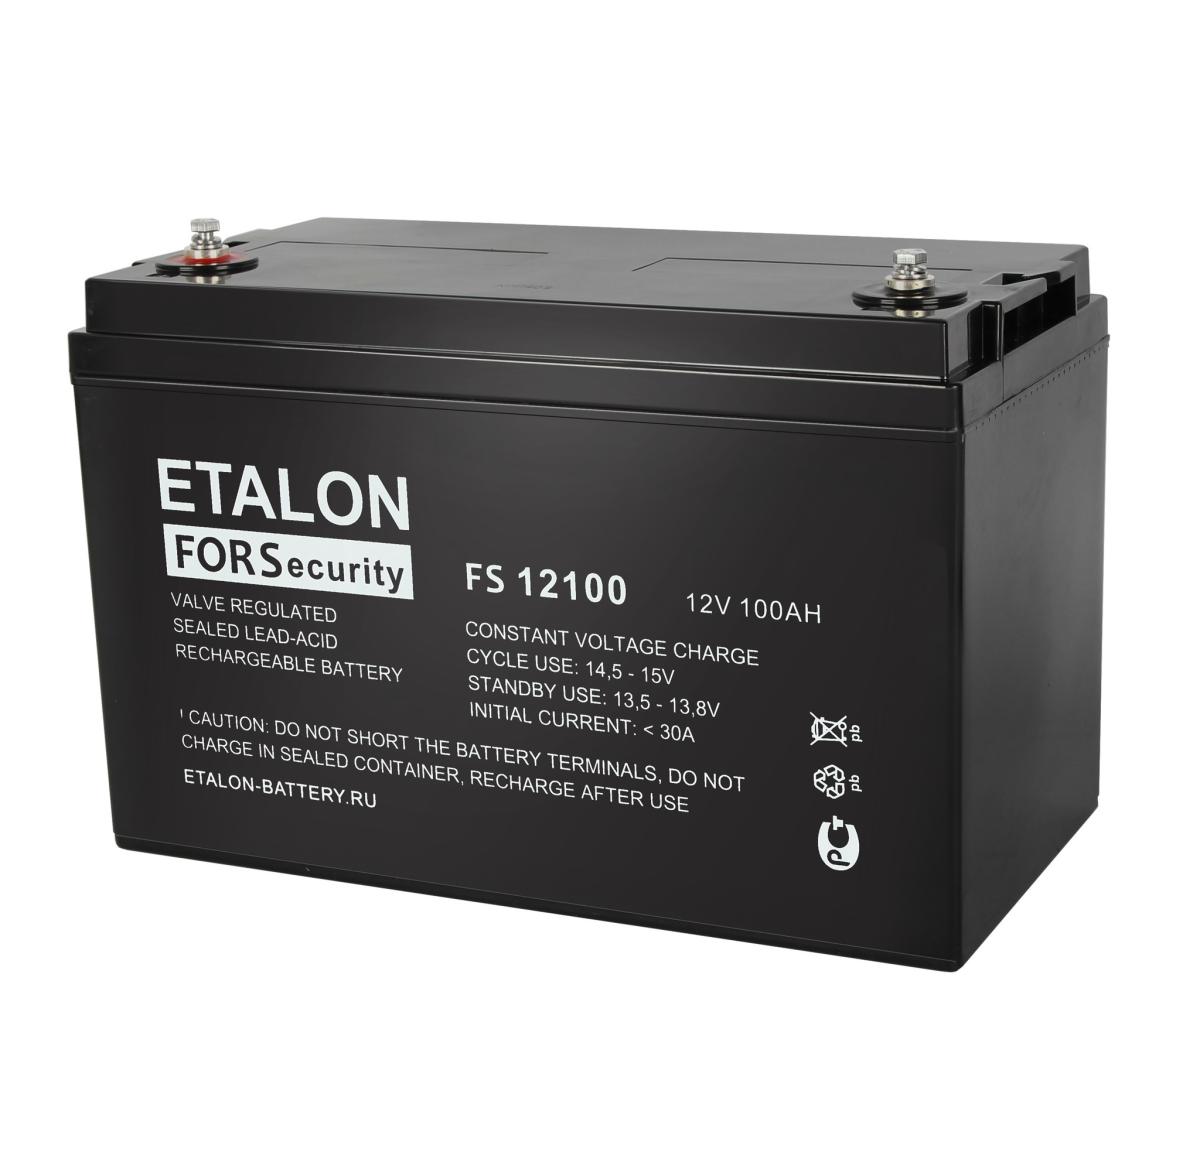 ETALON FORS 12100 Аккумулятор герметичный свинцово-кислотный